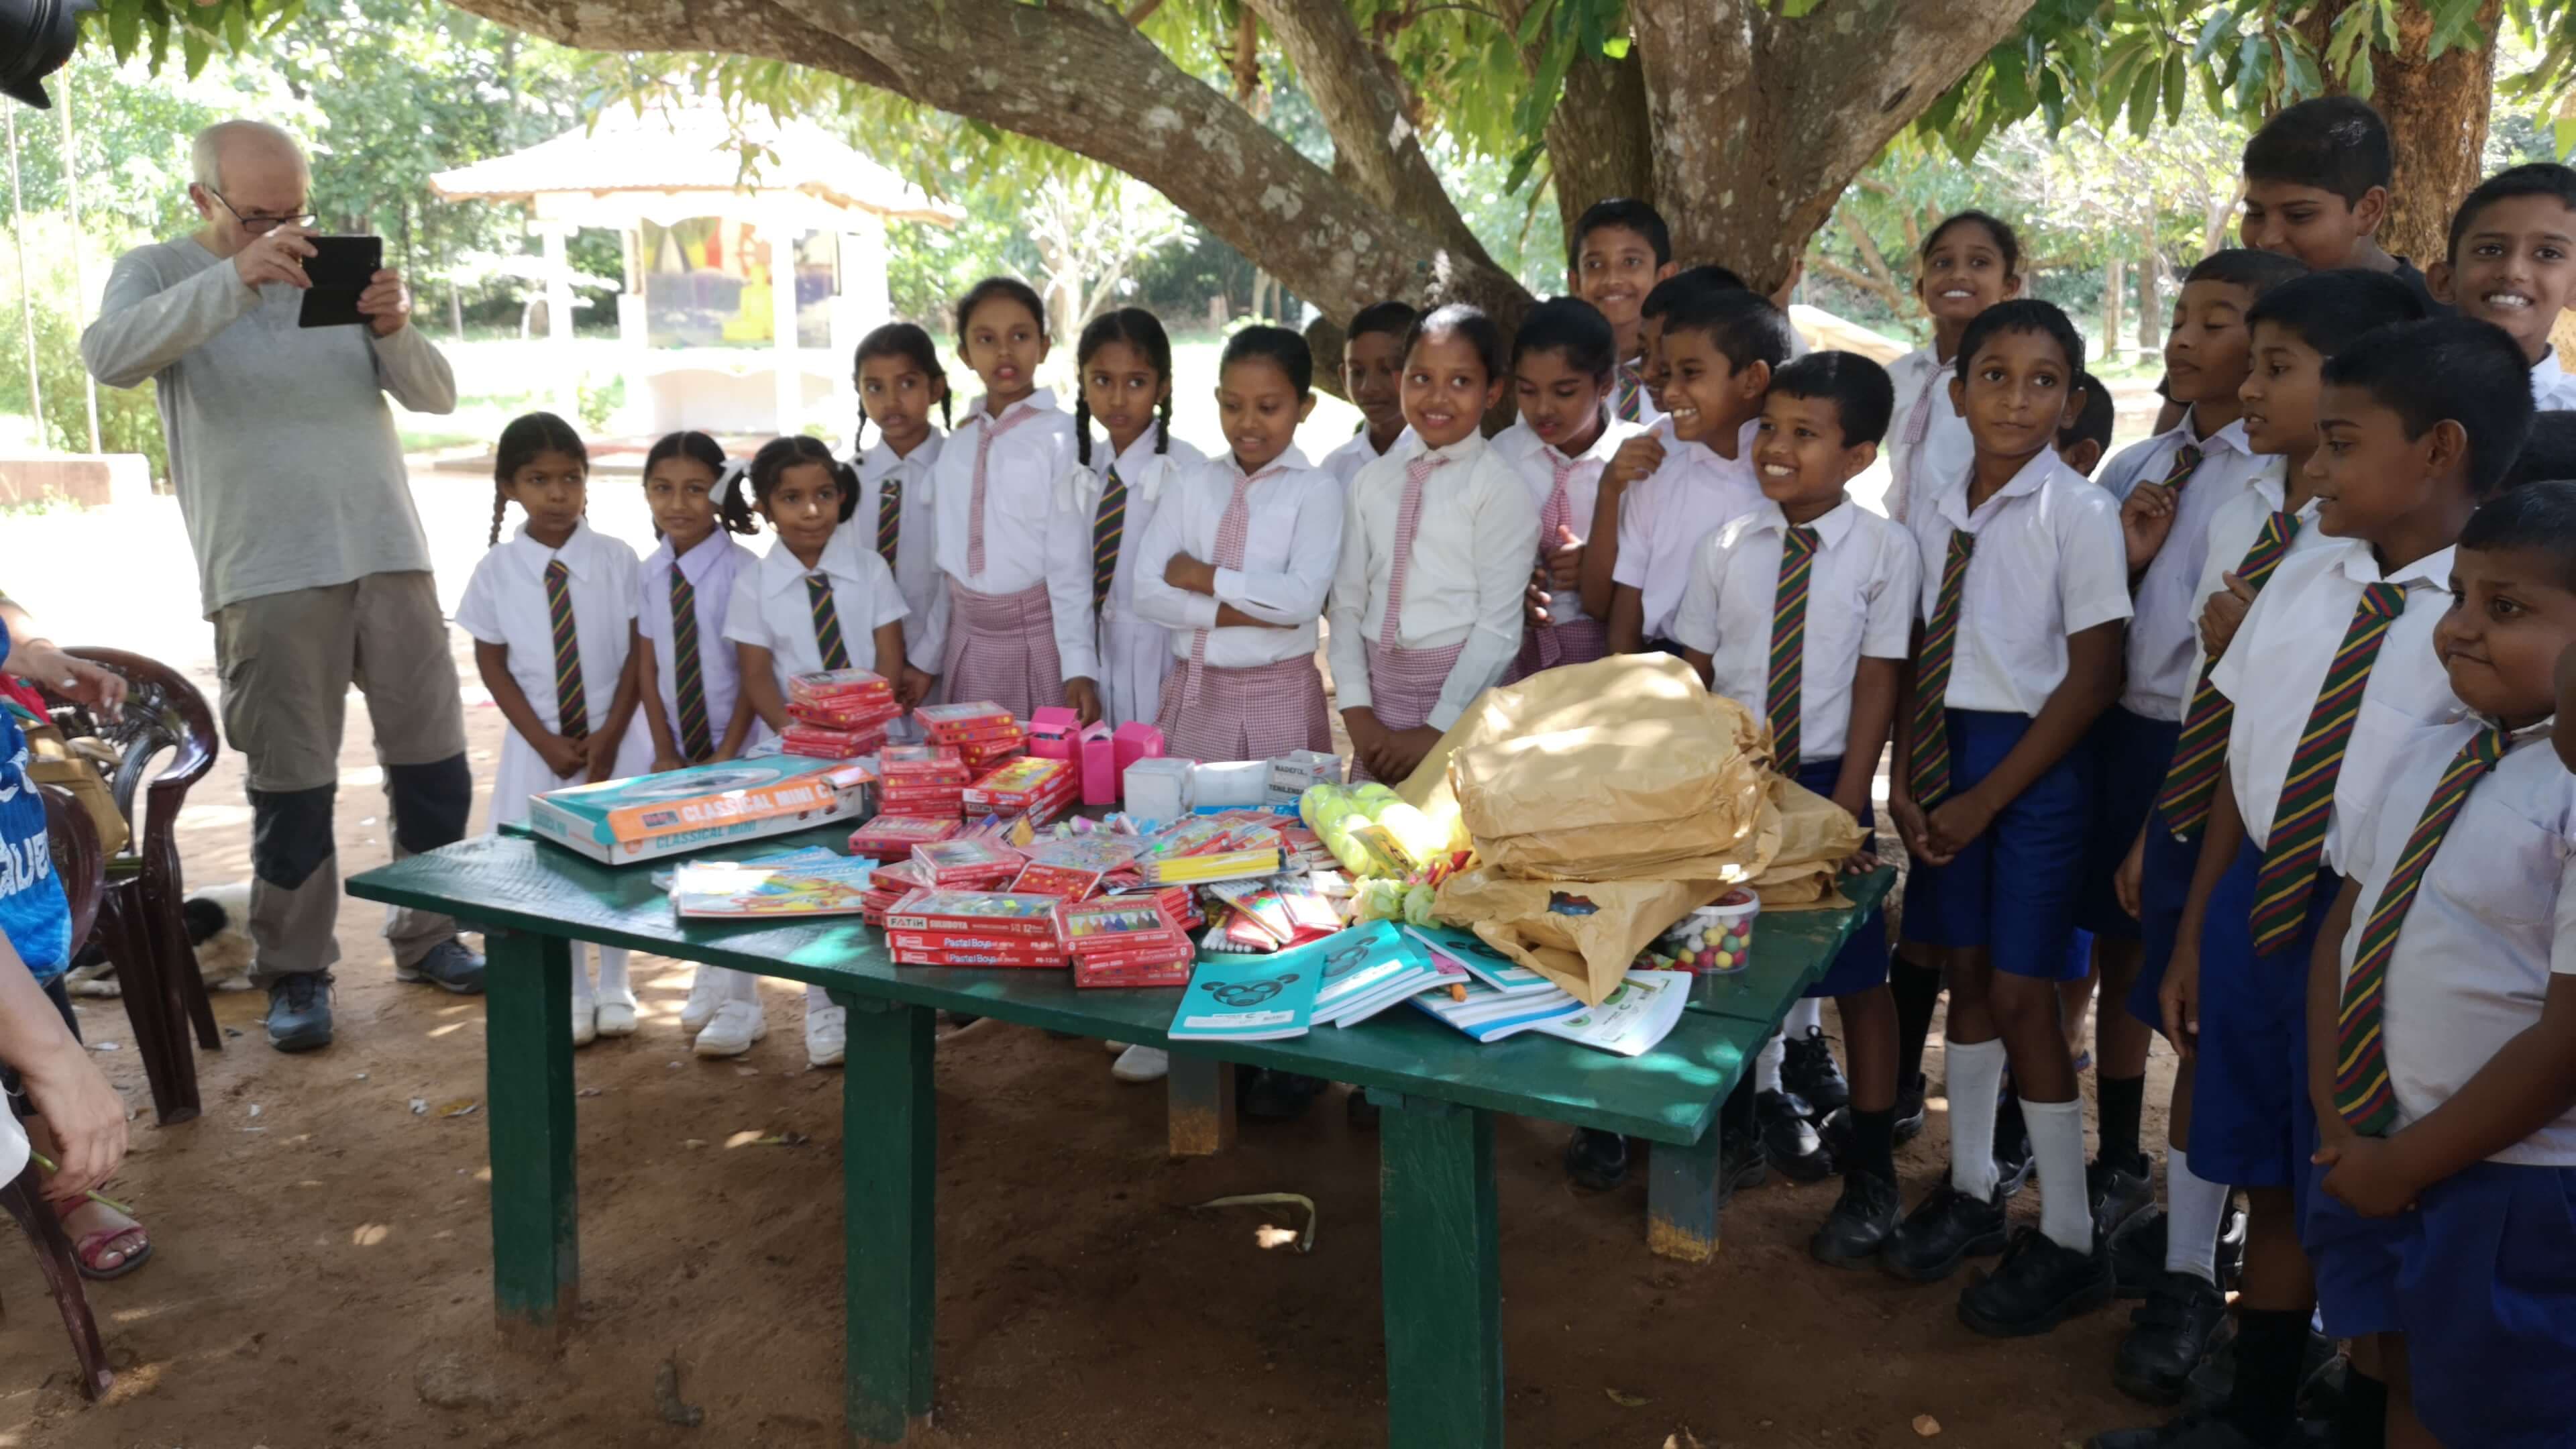 Participando en un sorteo de caridad organizado para escolares, Sri Lanka.